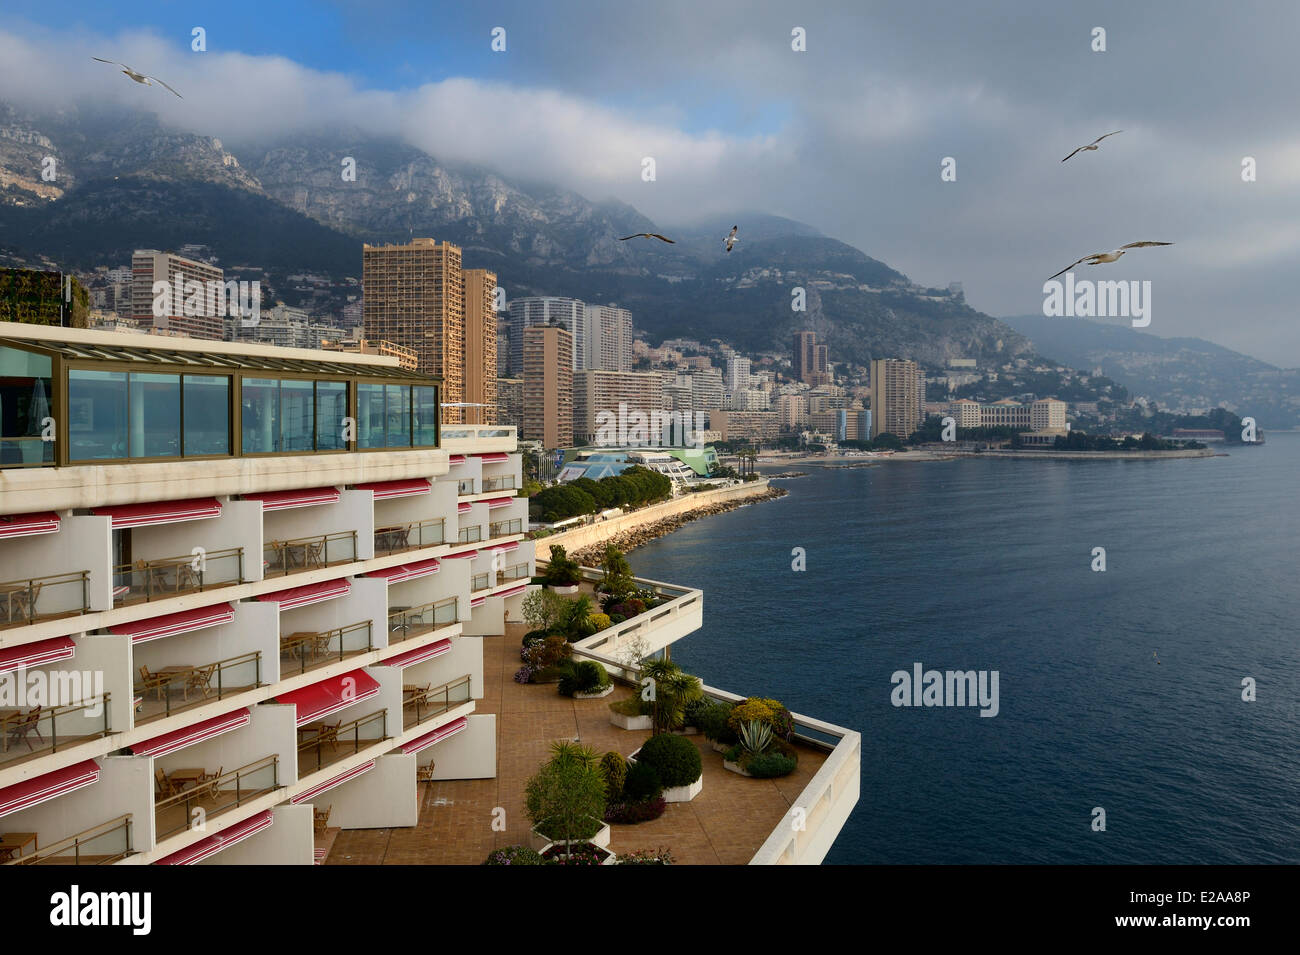 Principality of Monaco, Monaco, Monte-Carlo, Fairmont Hotel and the Larvotto district in the background Stock Photo